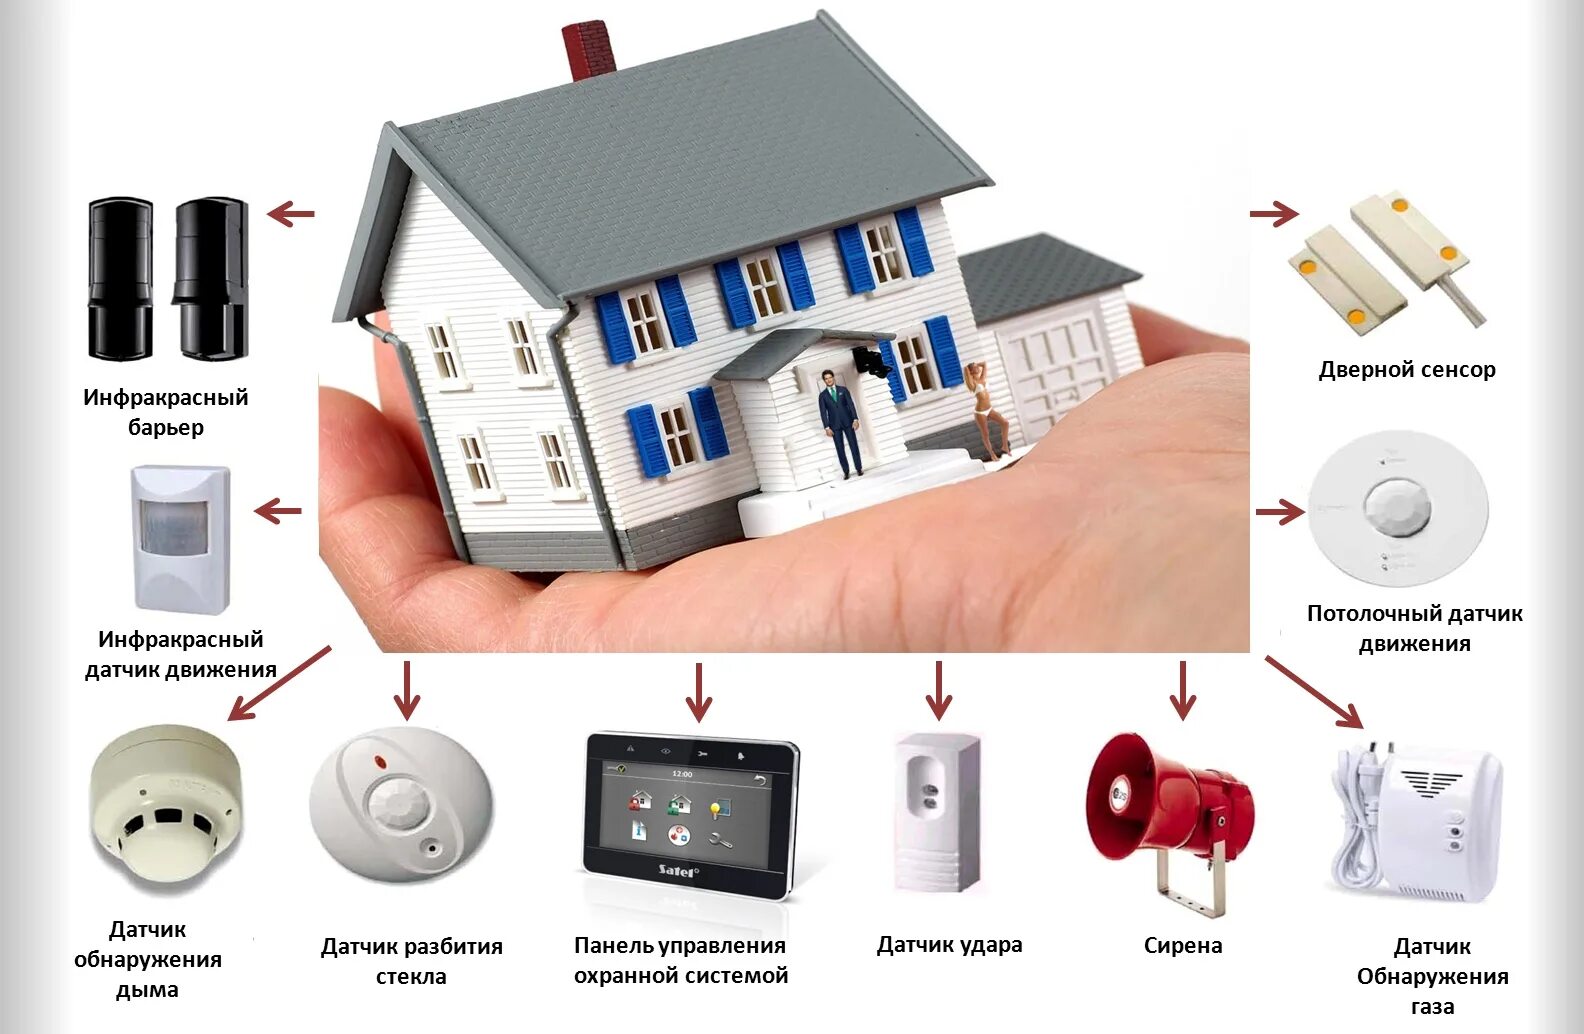 Система видеонаблюдения системы охраны сигнализации. Охранная сигнализация для дома. Система пожарной сигнализации. Монтаж системы охранной сигнализации.